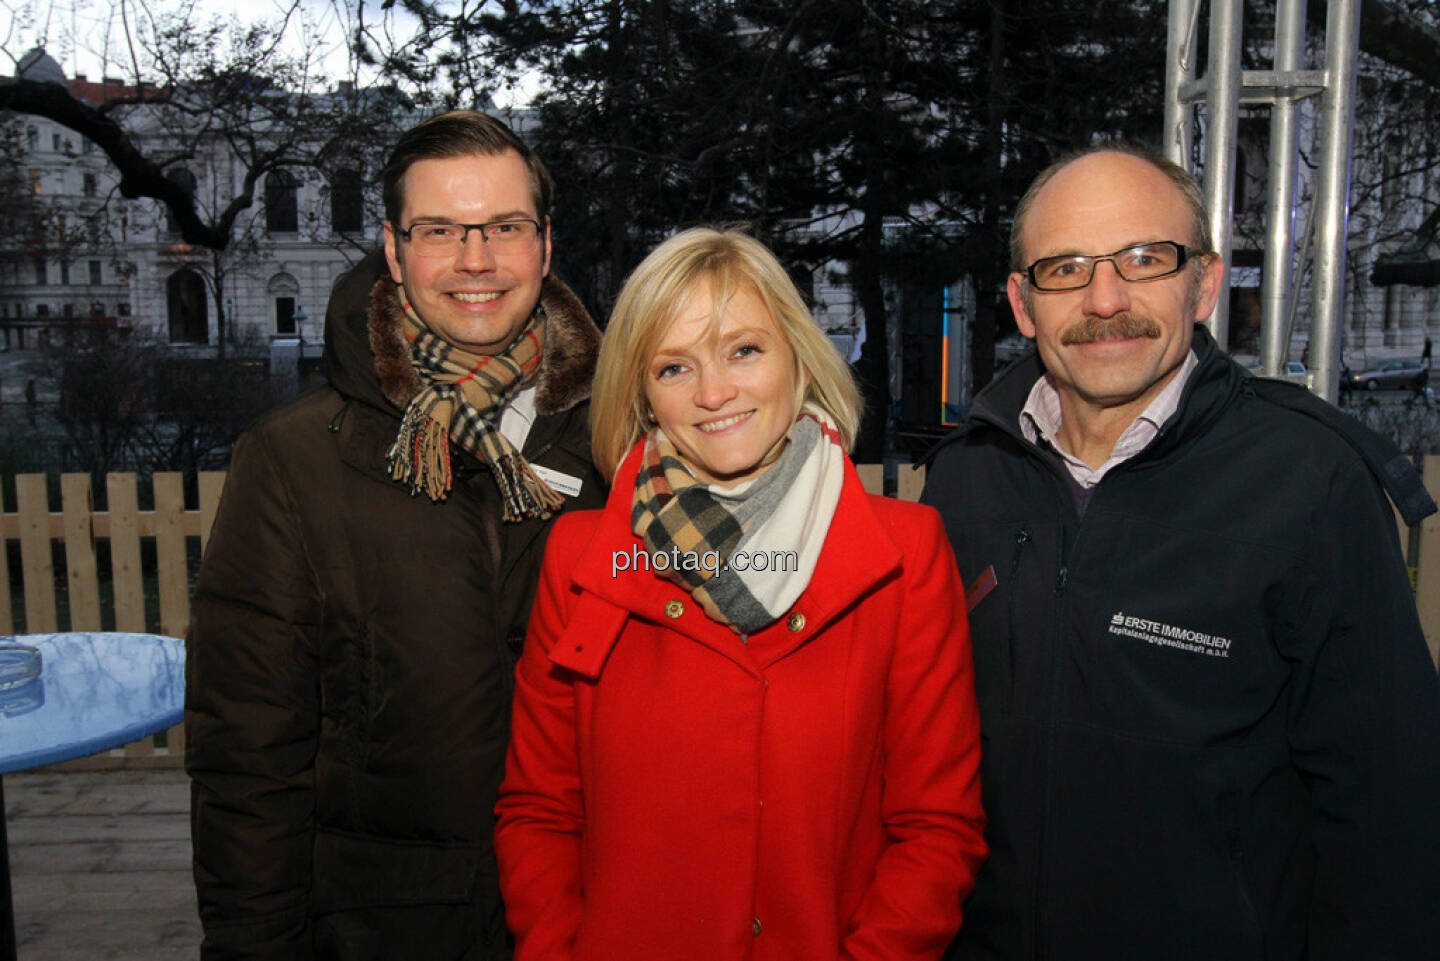 Peter Karl, Ursula Sedunko, Franz Gschiegl - Eisstockschiessen mit der Erste Immobilien KAG 